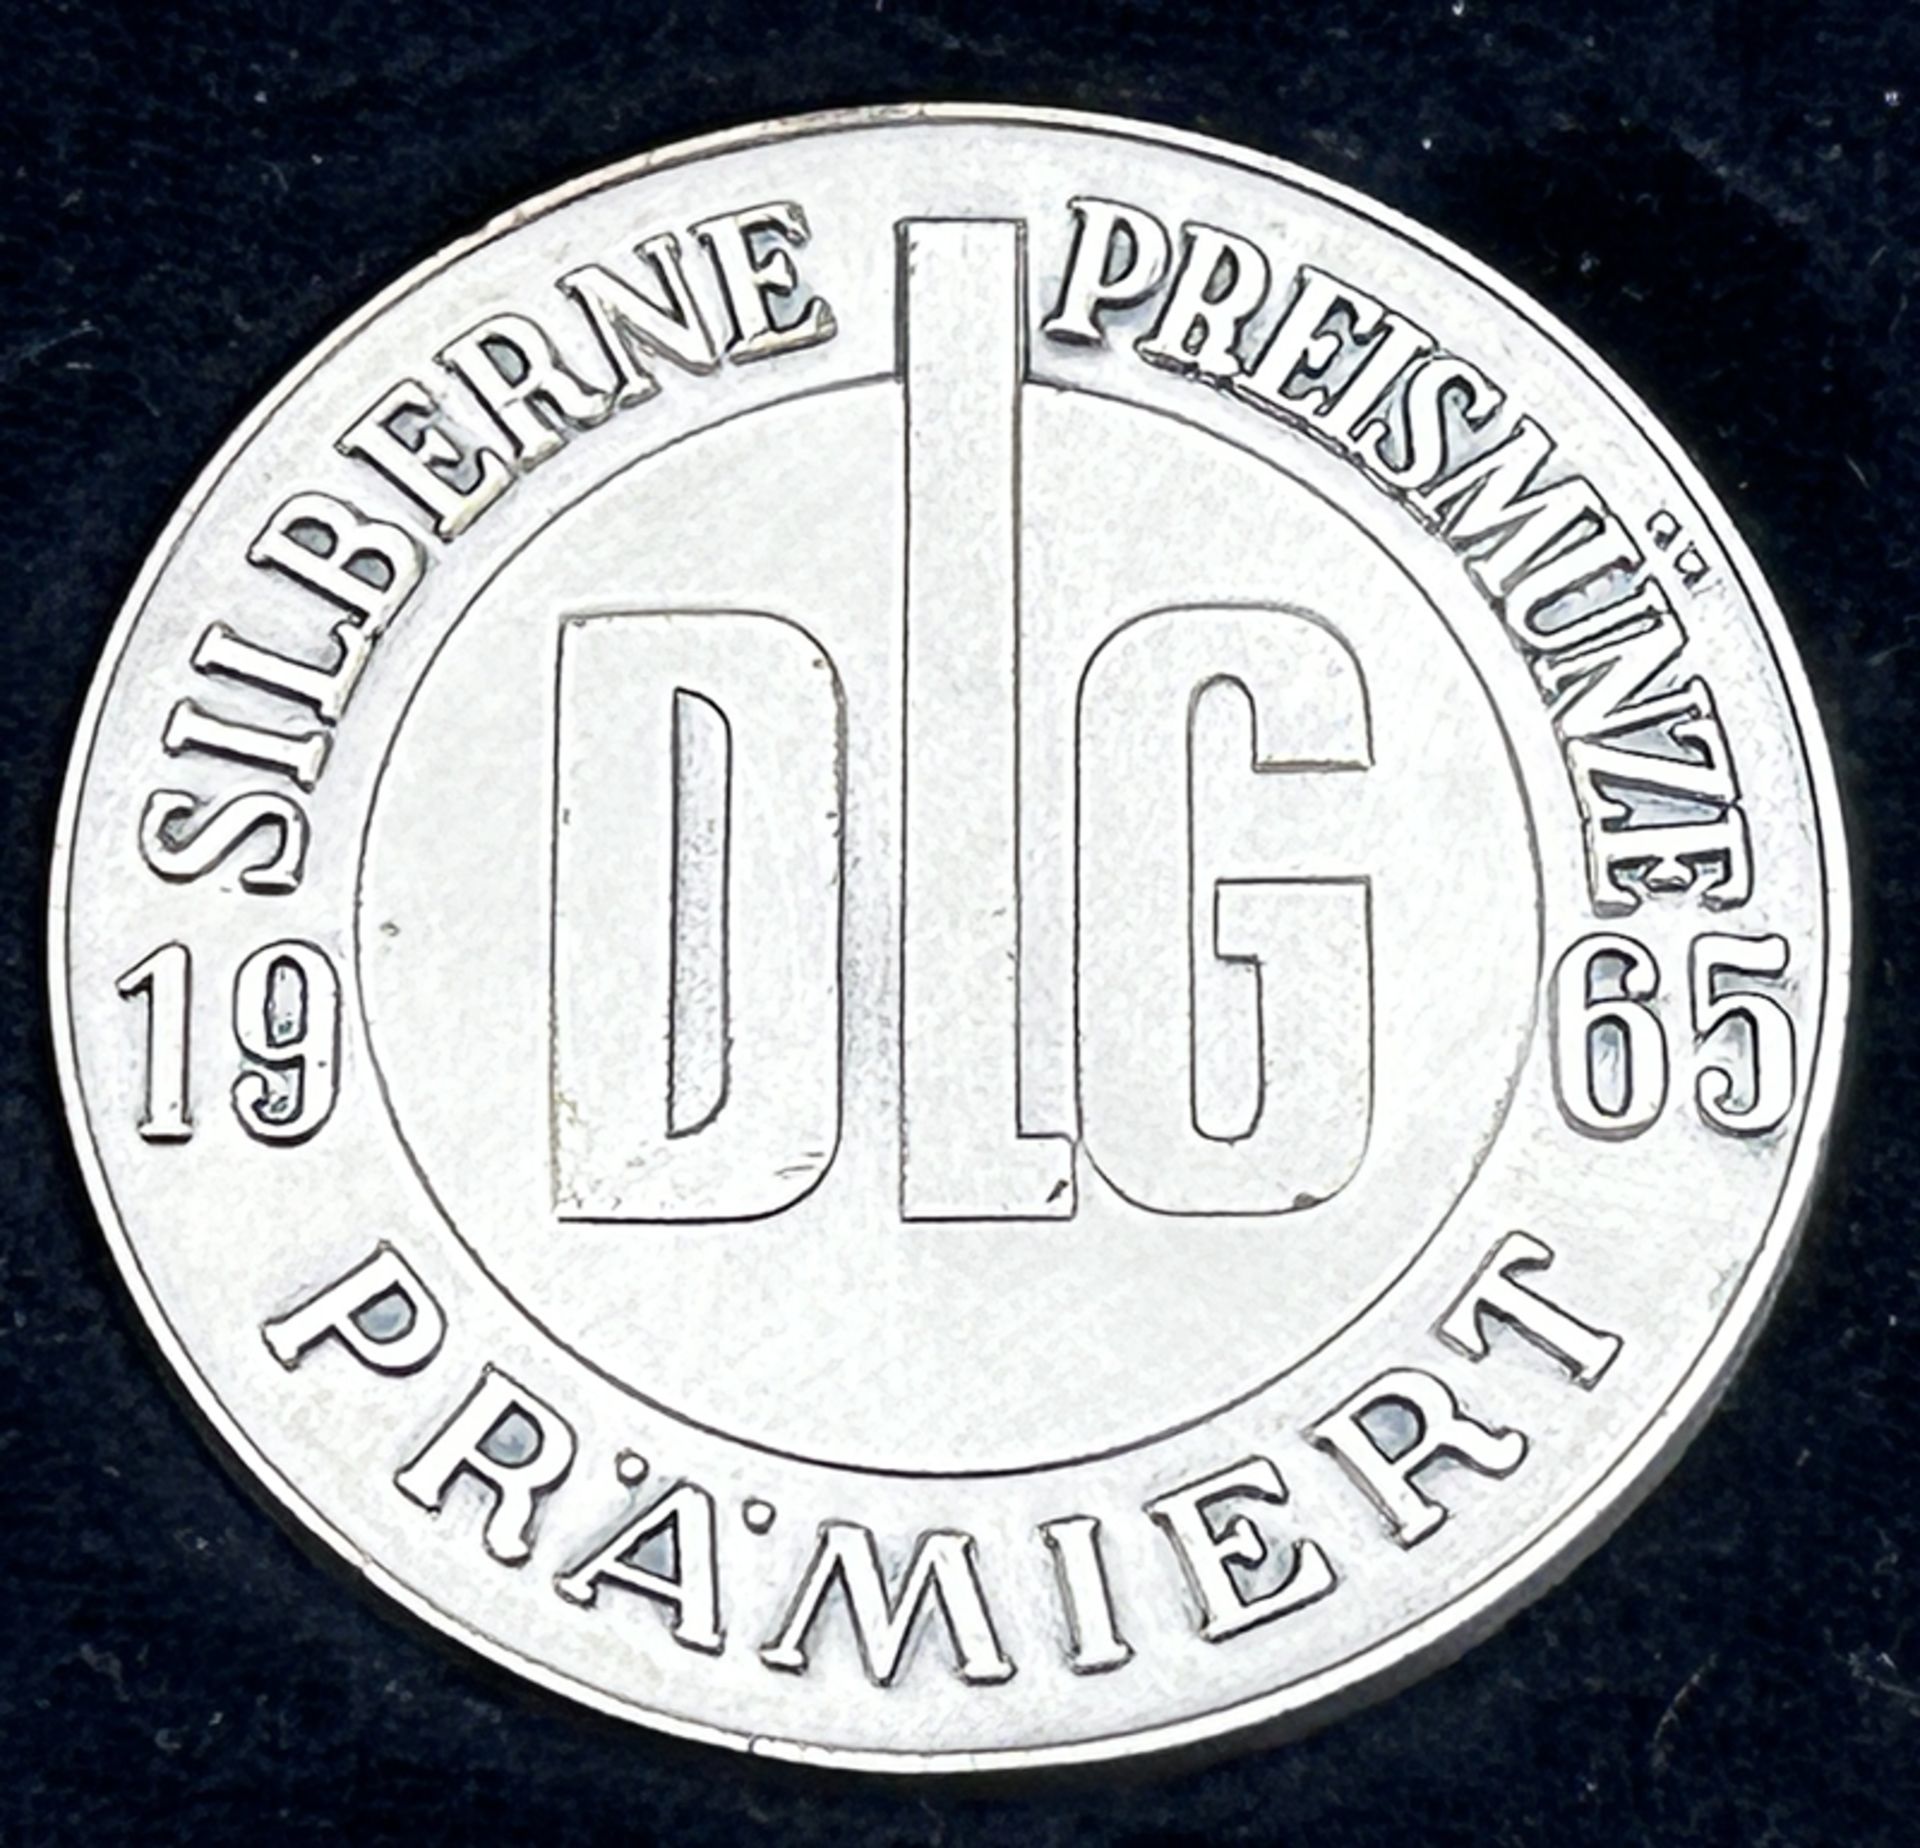 3 Preis-Plaketten "Deutsche Landwirtschaftliche Gesellschaft" in OVP, 60-er Jahre, ca. 4 cm - Image 4 of 5